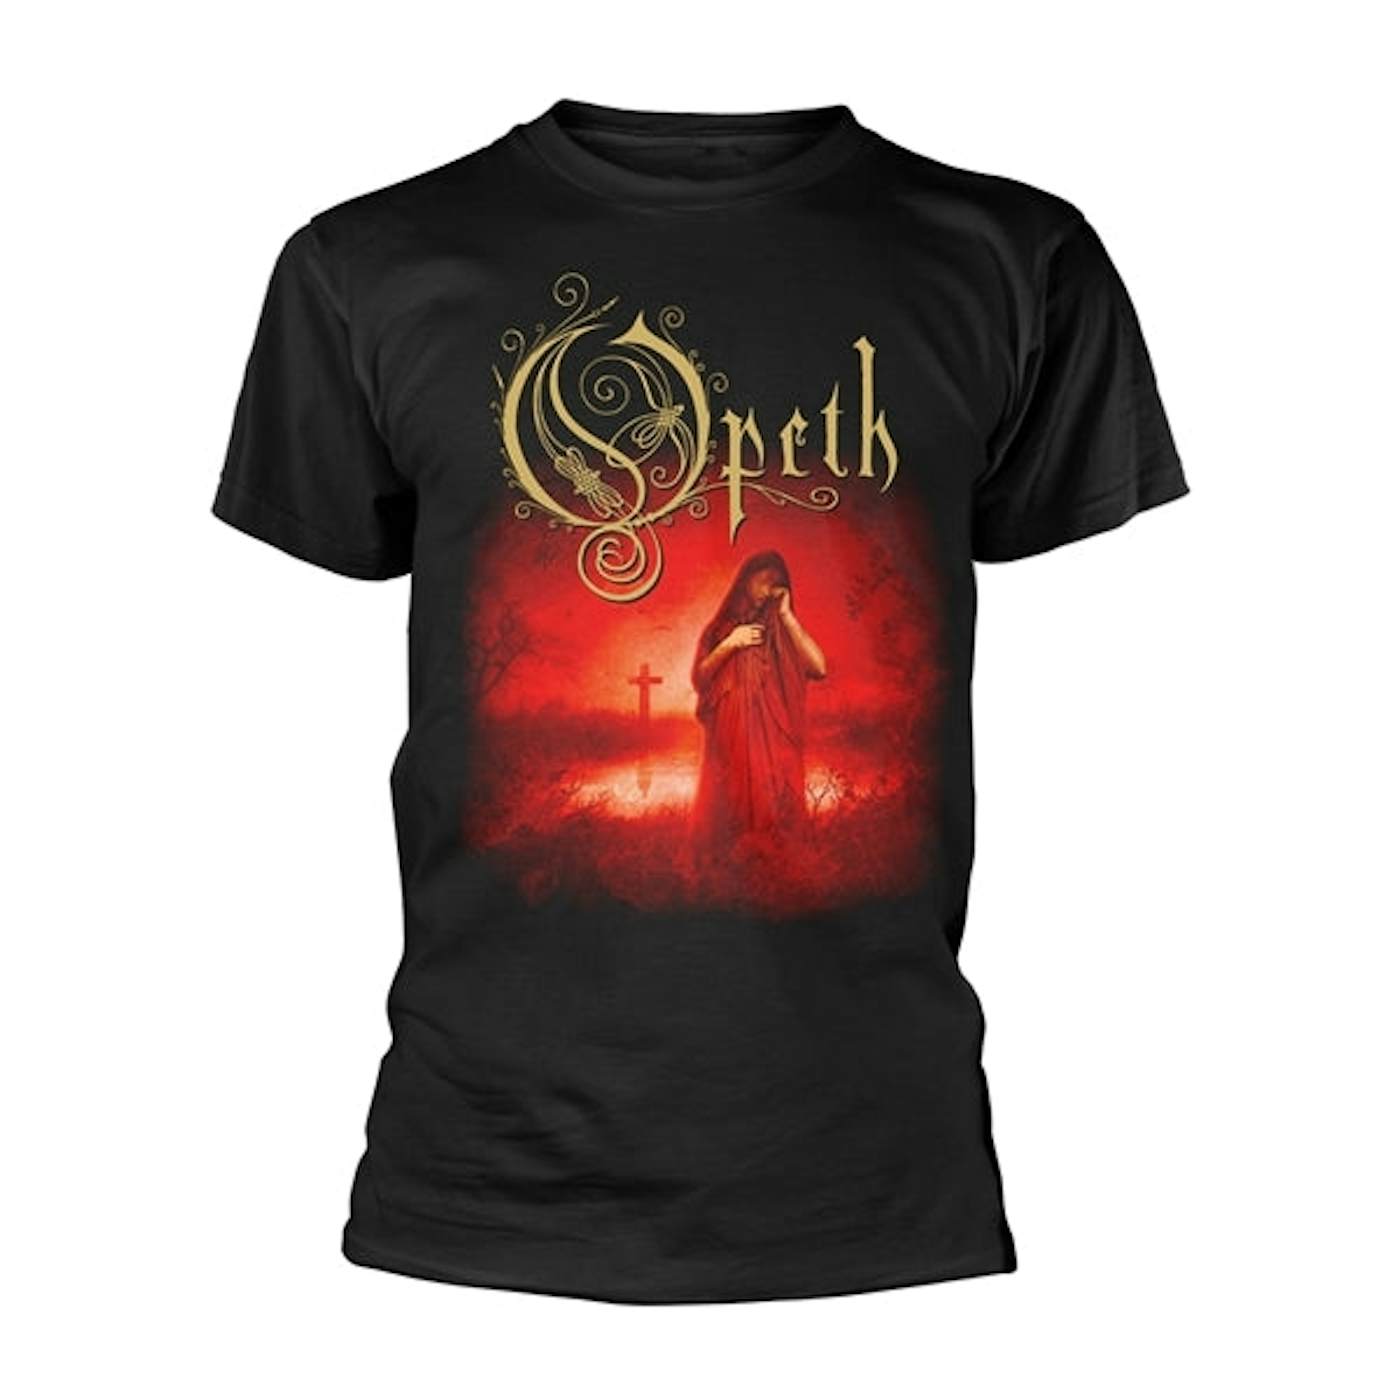 Opeth T Shirt - Still Life